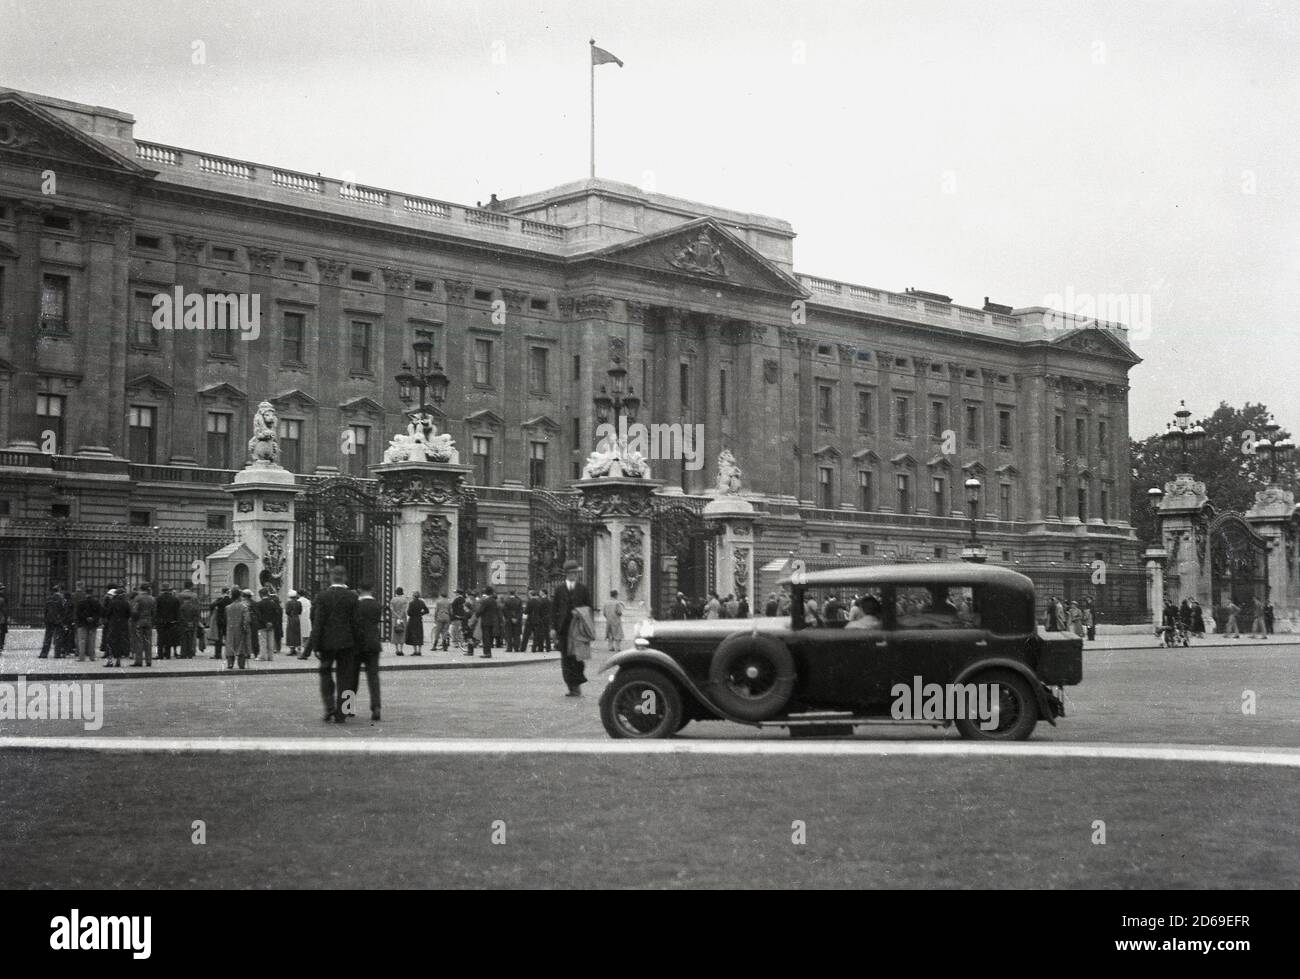 Années 1920, historique, une voiture à quatre portes de l'époque garée sur le Mall en face de Buckingham Palace, la résidence londonienne de la reine Elizabeth britannique. Les gens se tiennent à la clôture en fer forgé du palais, Londres, Angleterre, Royaume-Uni, dans l'ouverture d'un aperçu de la célèbre résidence royale. Banque D'Images